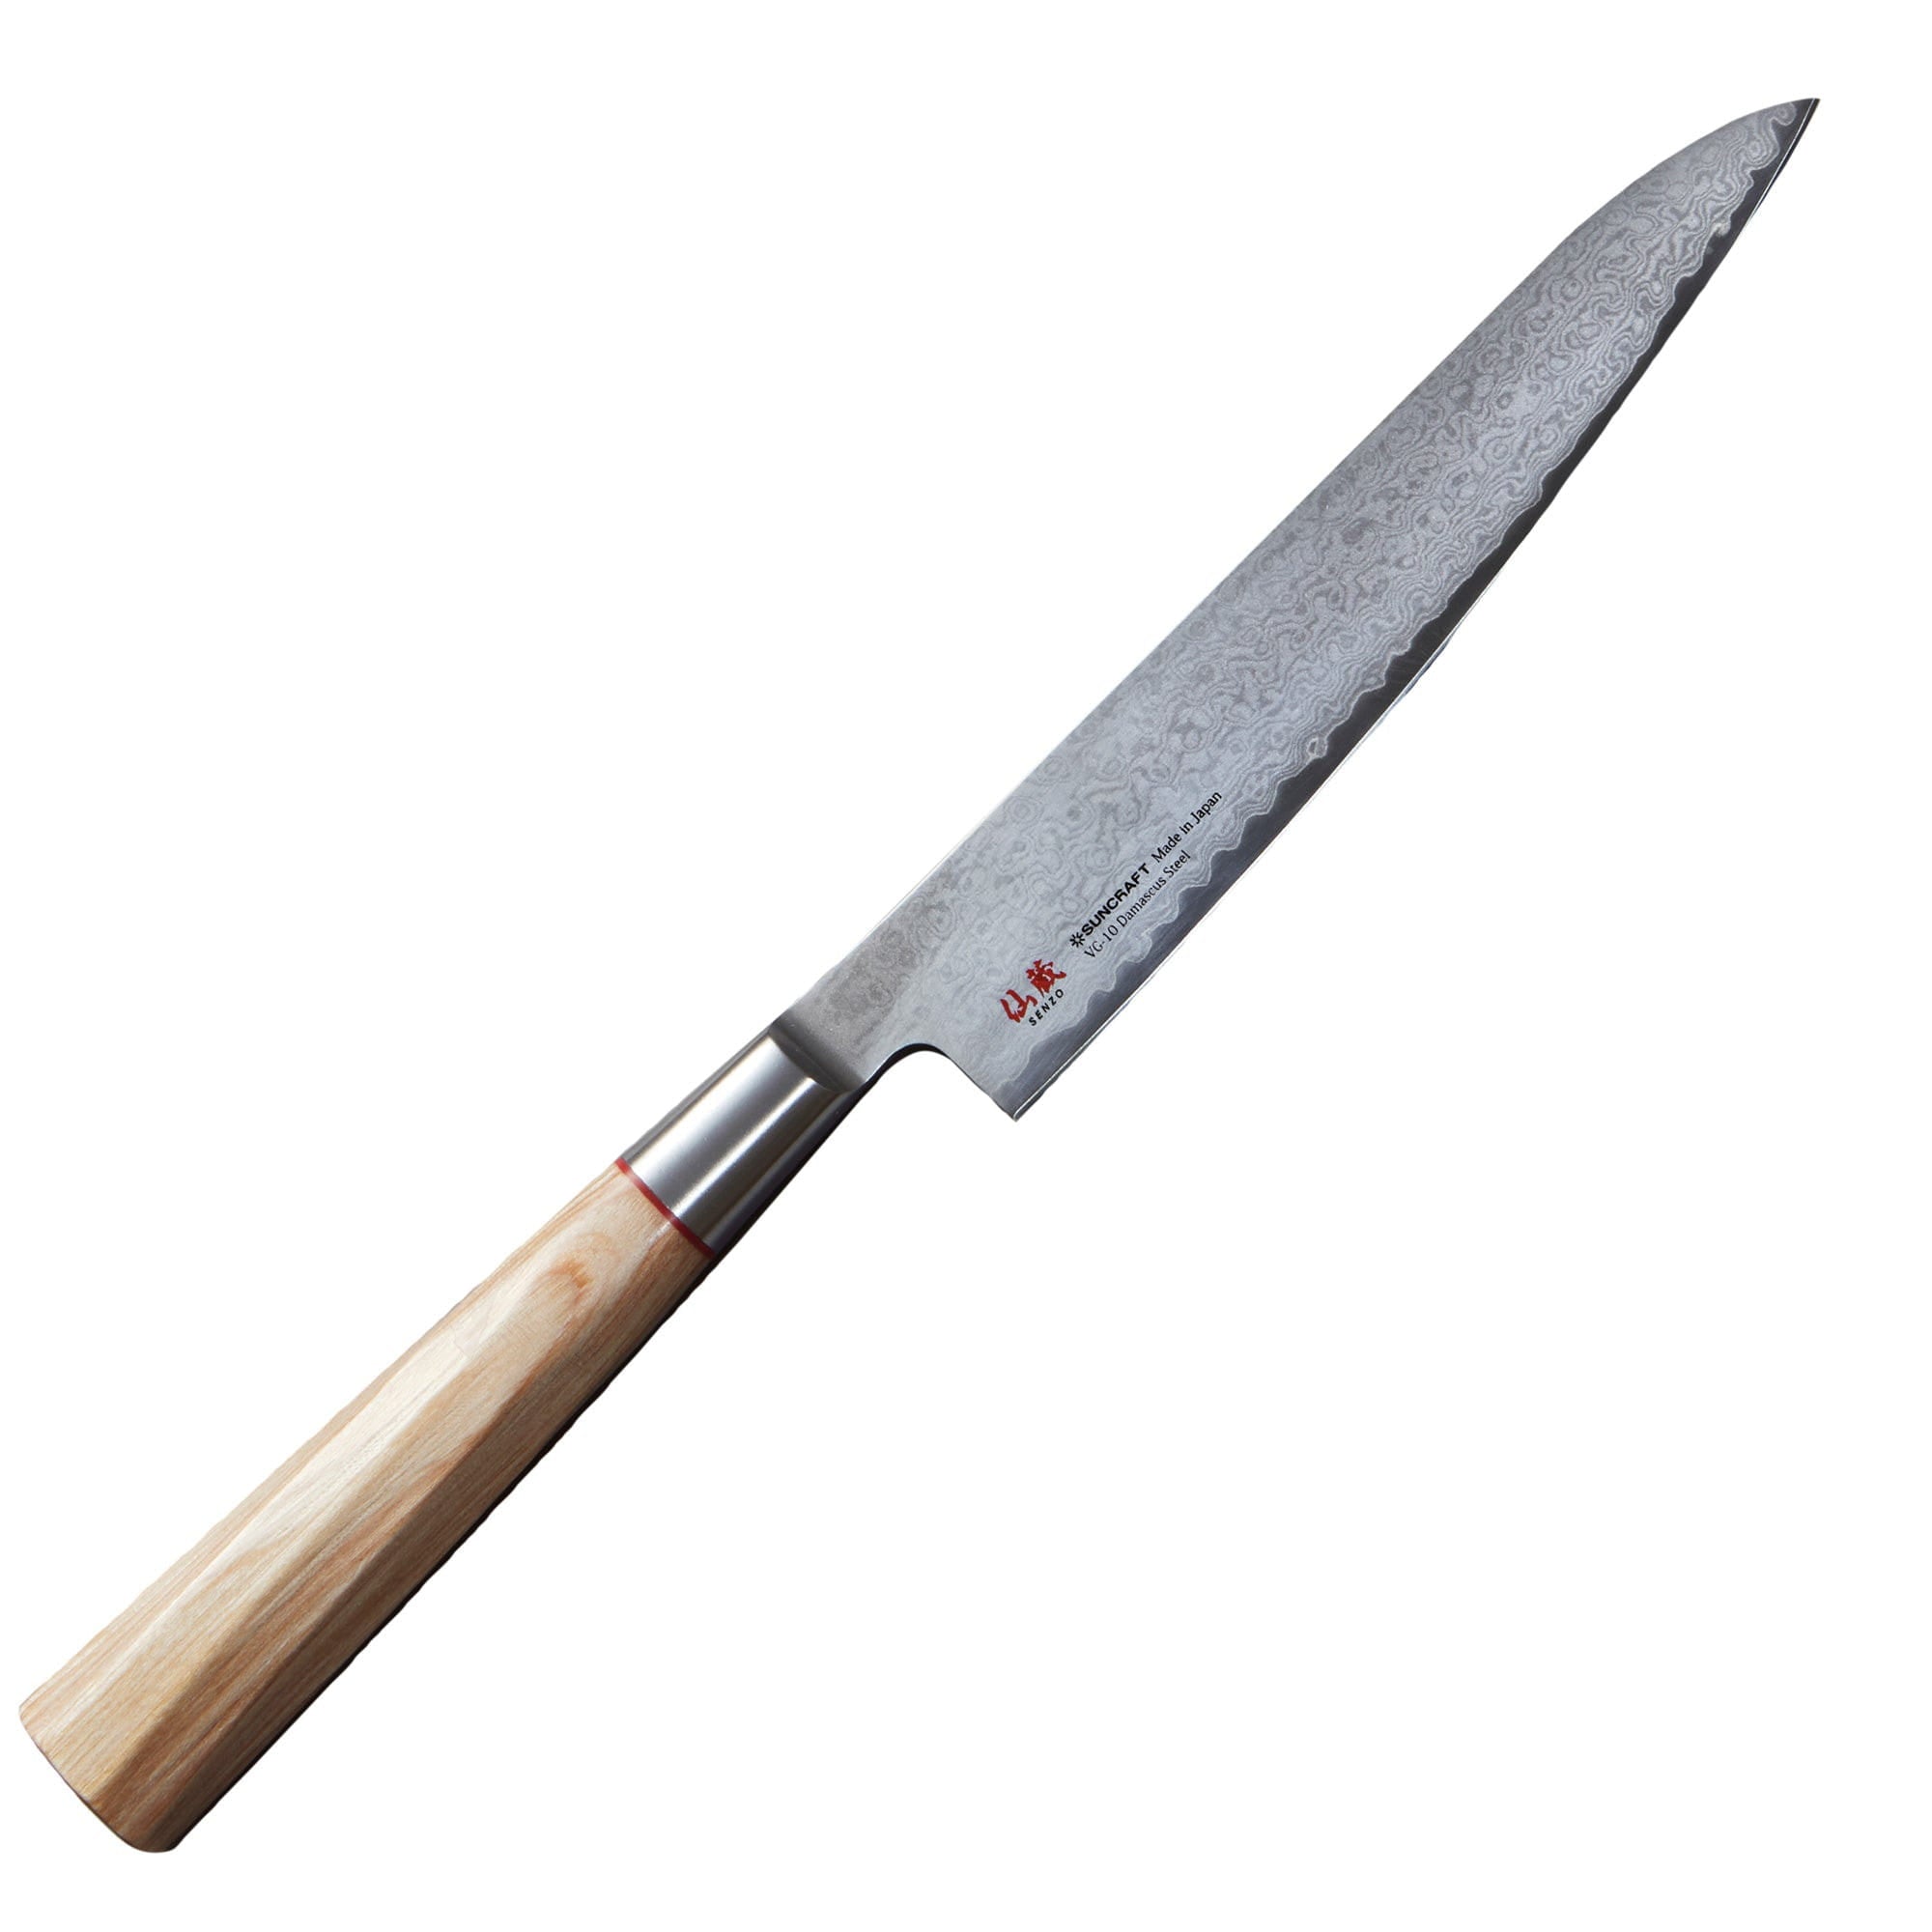 Senzo til 02 Universal Knife, 15 cm